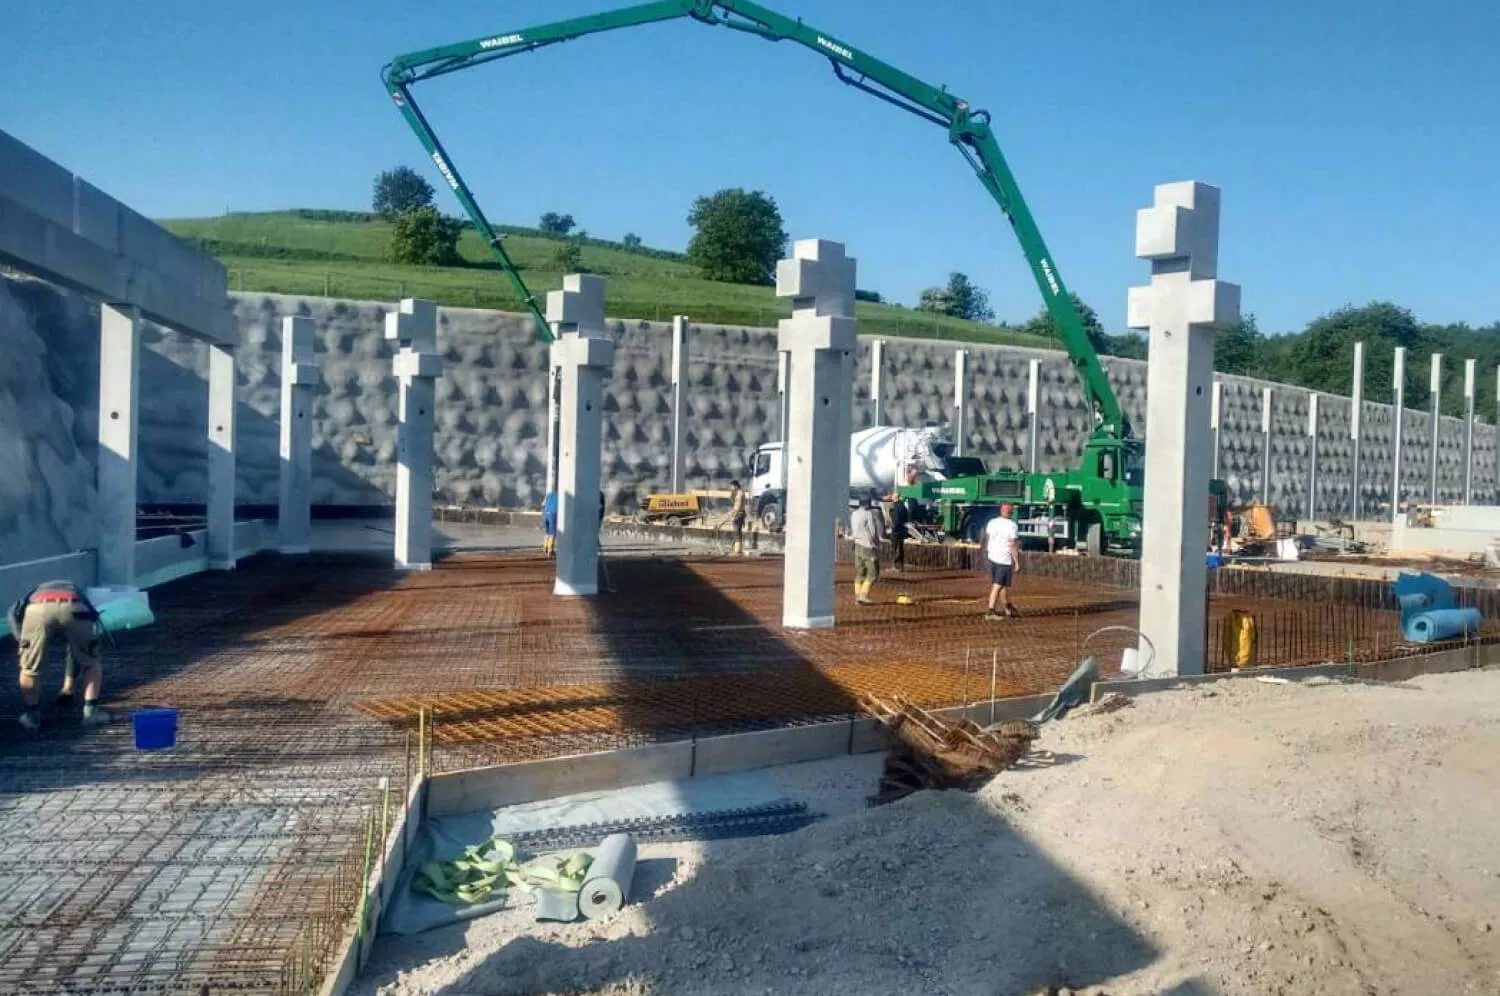 hochbau-hoch-beton-bagger-gewerbepark-fundament-stahl-bauarbeiter-betonmischer-kran-außenanlage